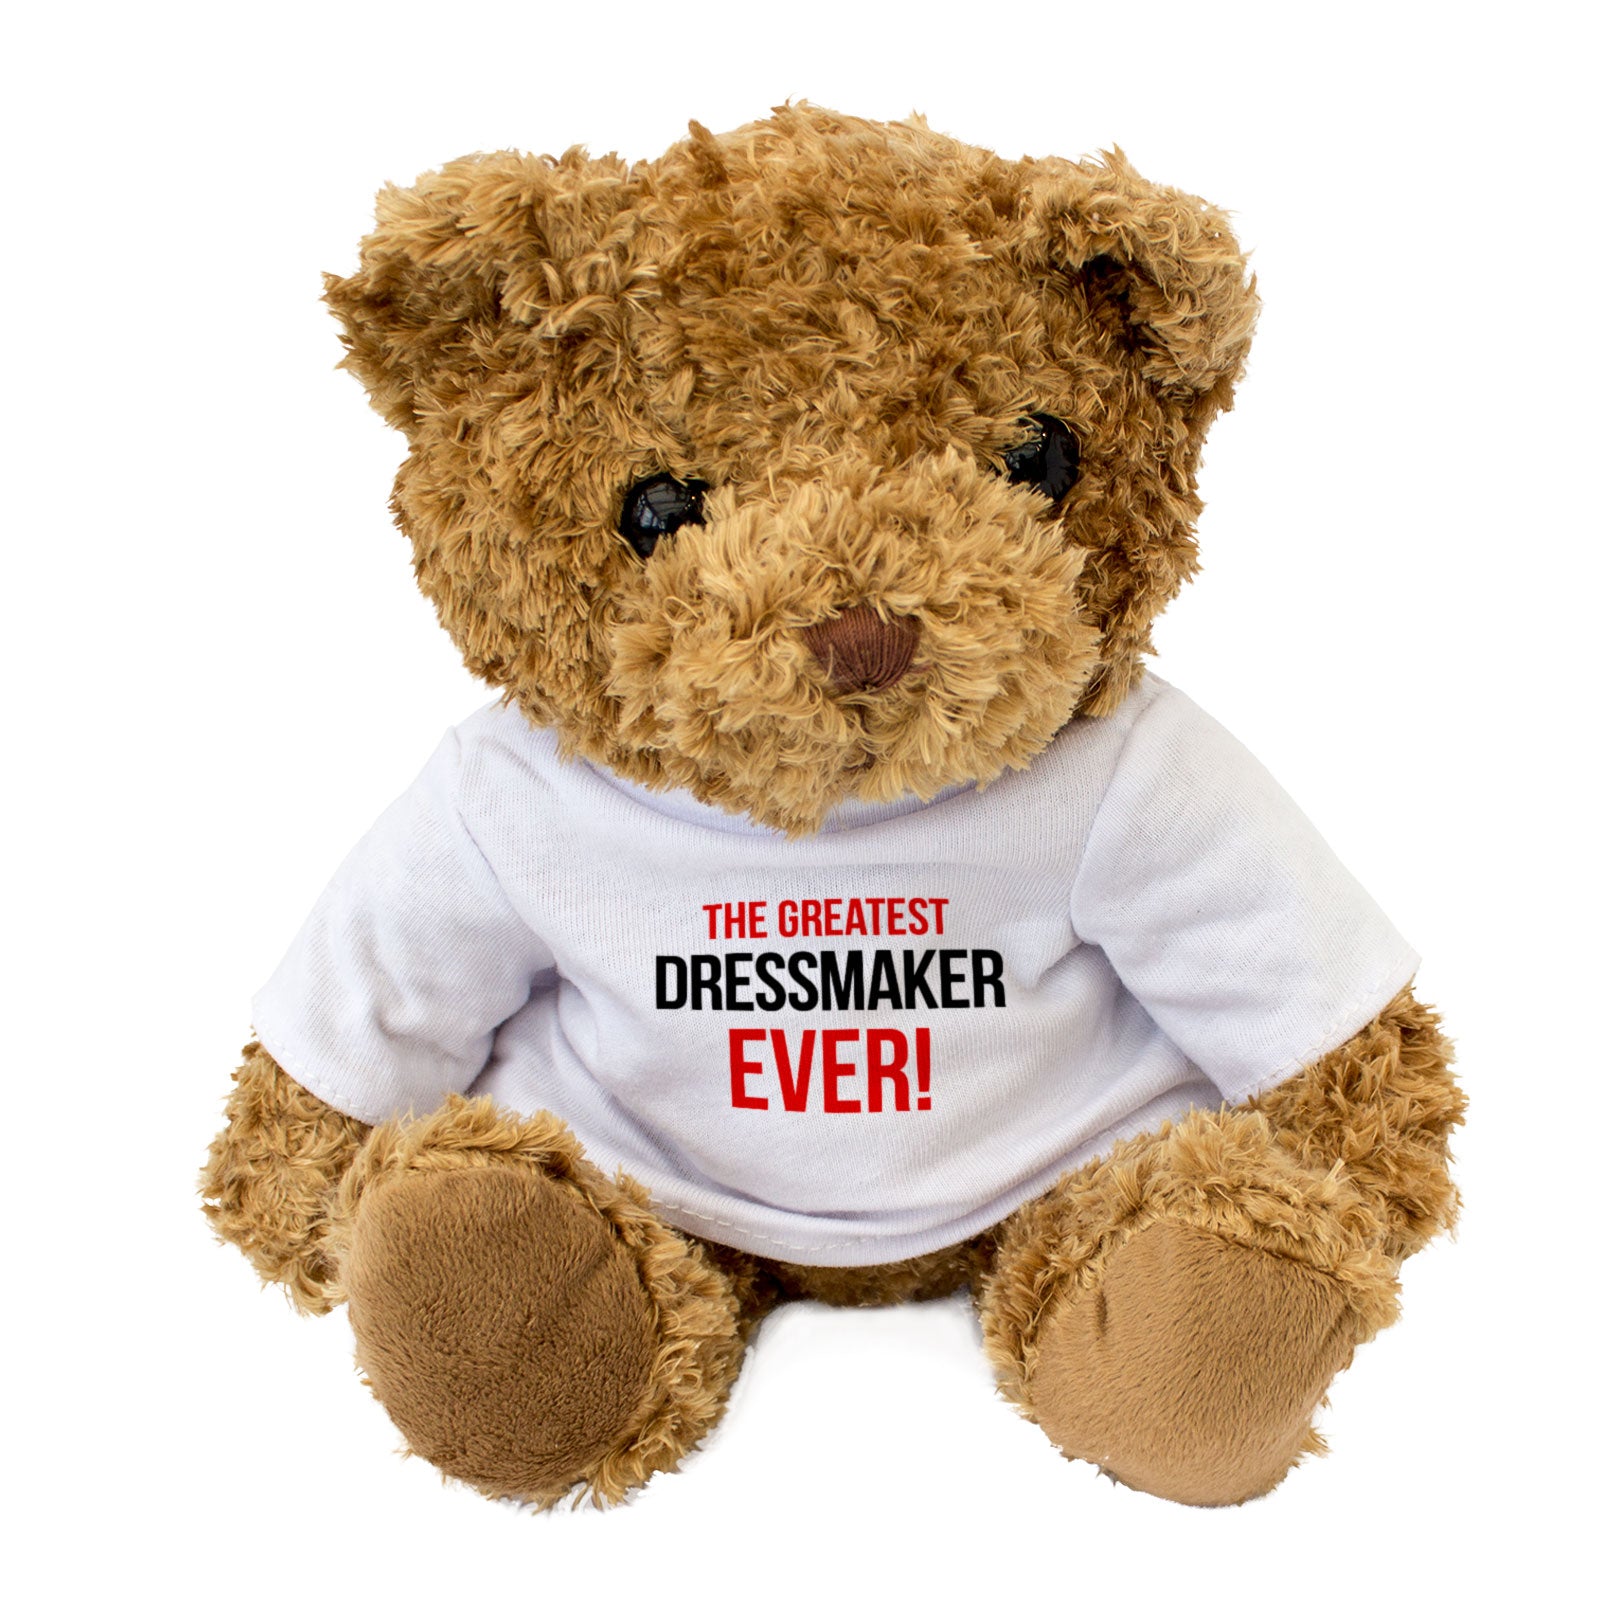 The Greatest Dressmaker Ever - Teddy Bear